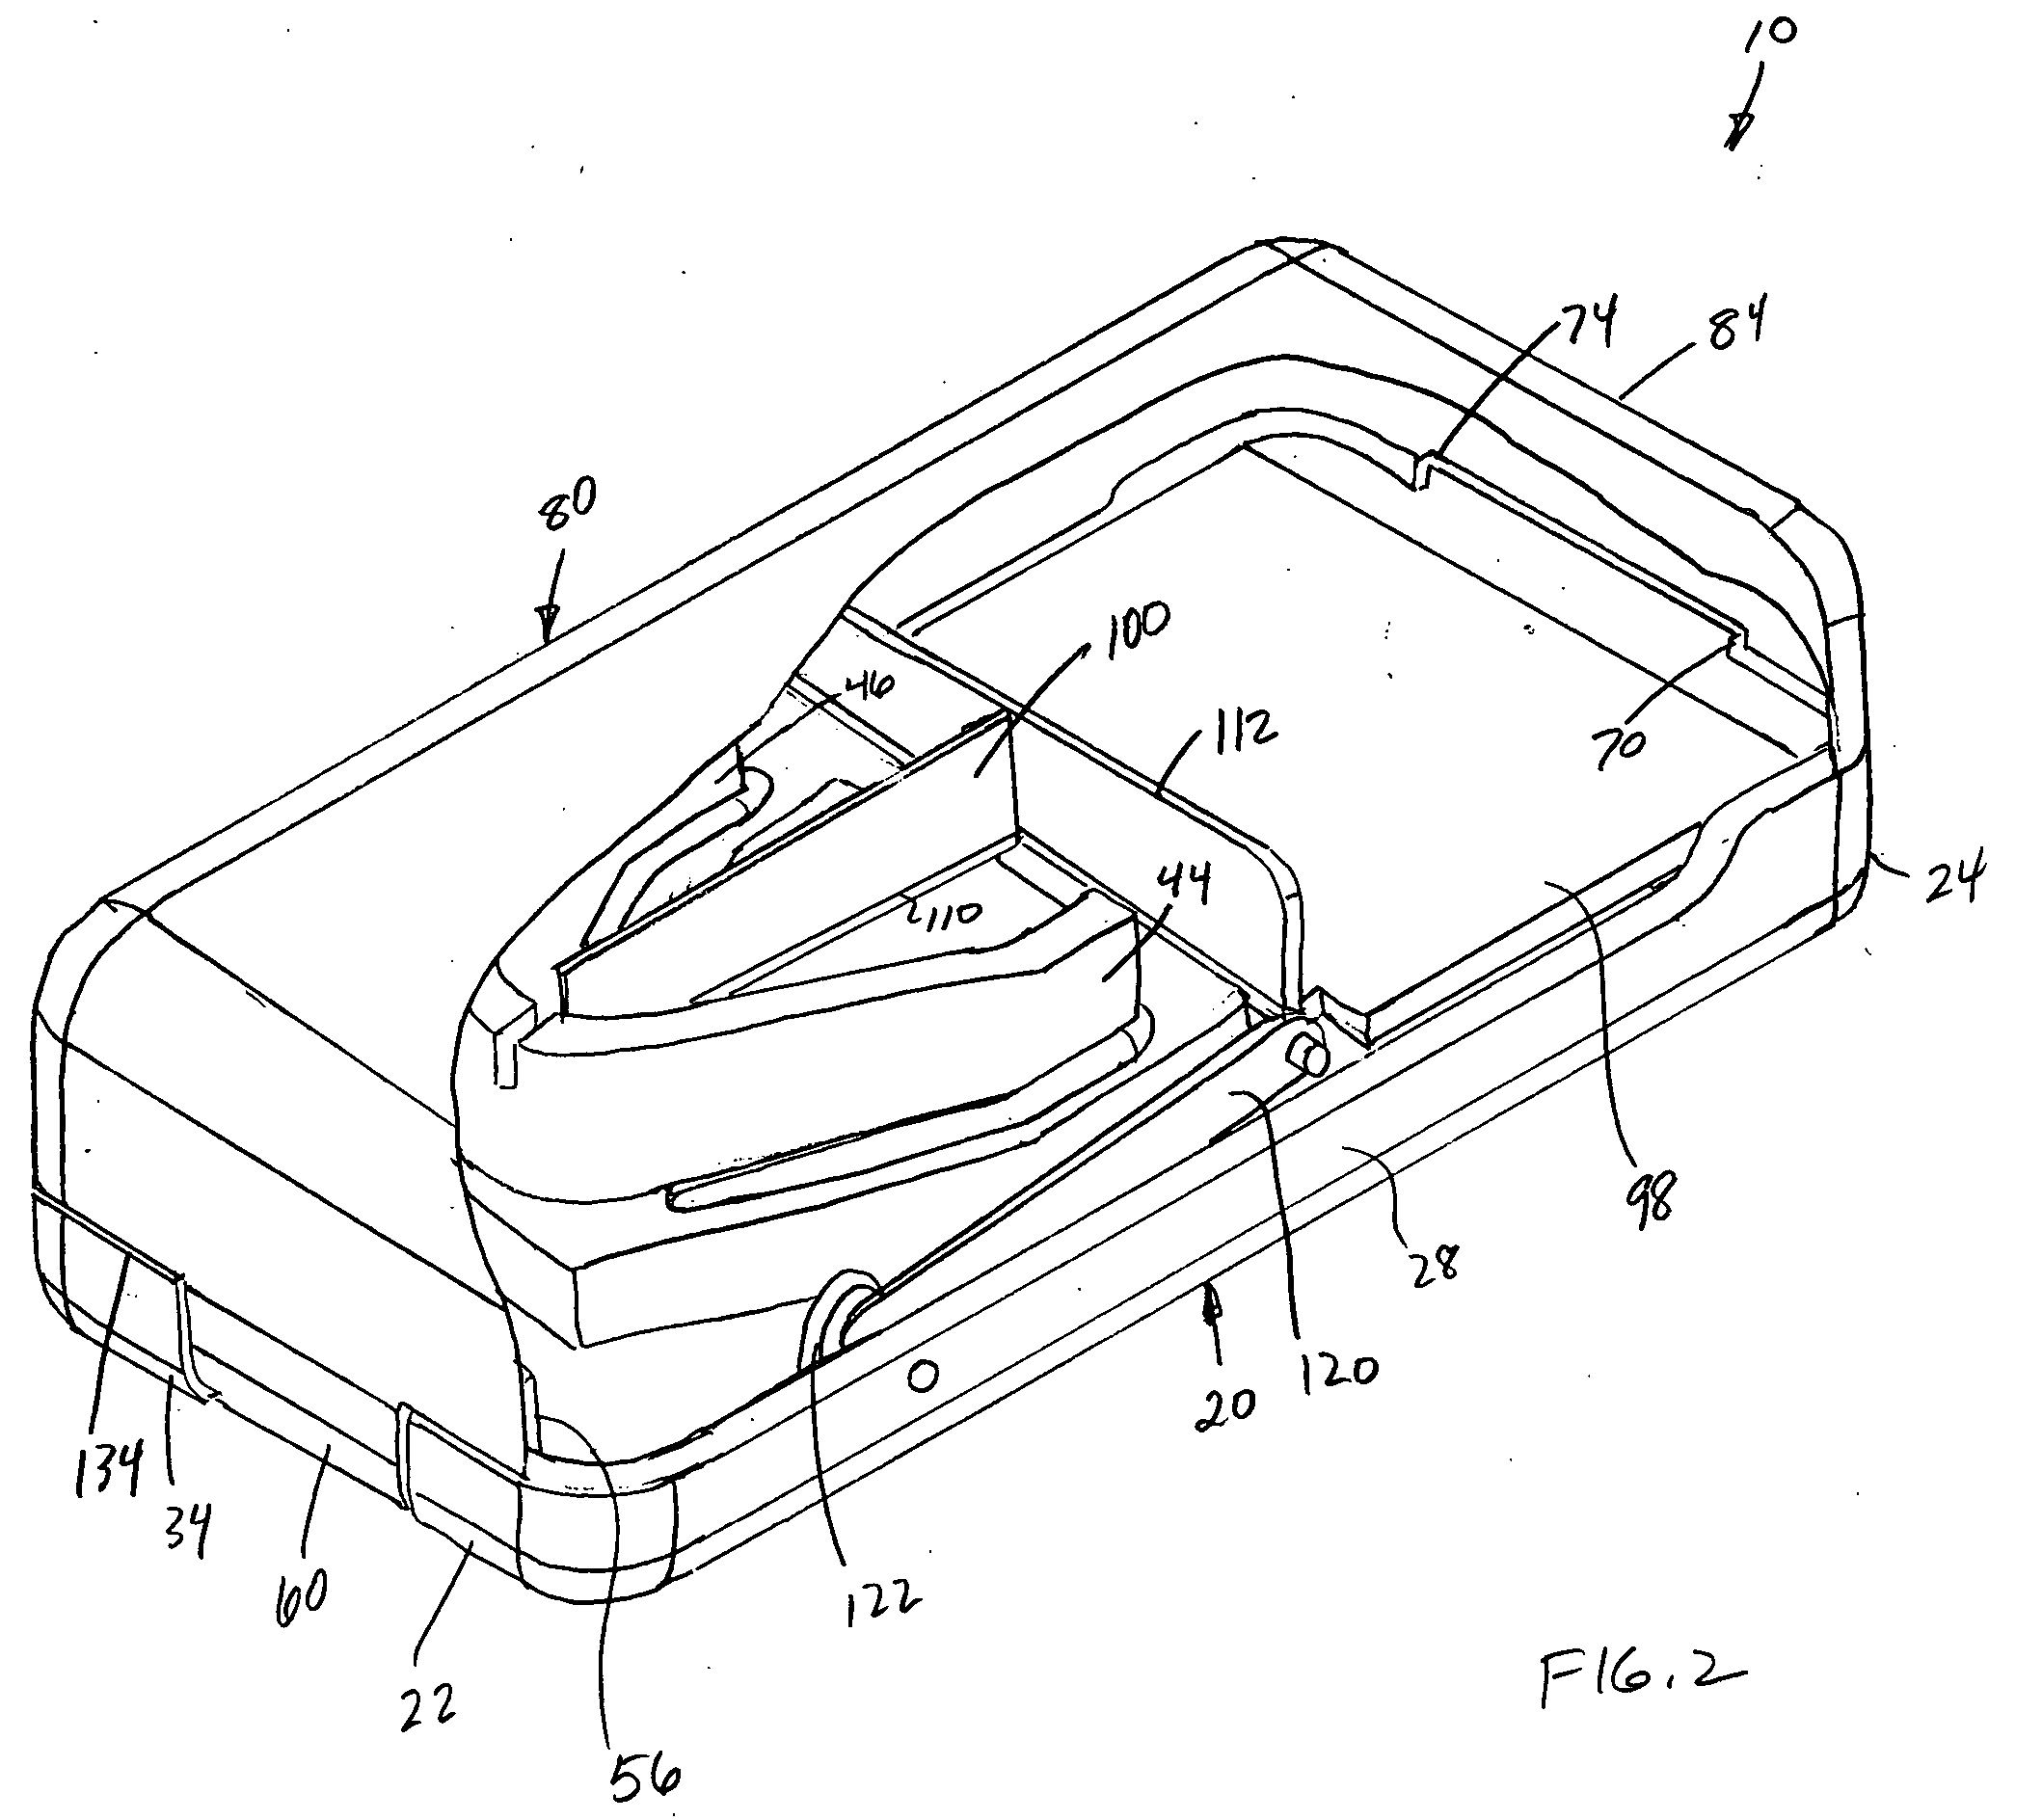 Tablet cutter